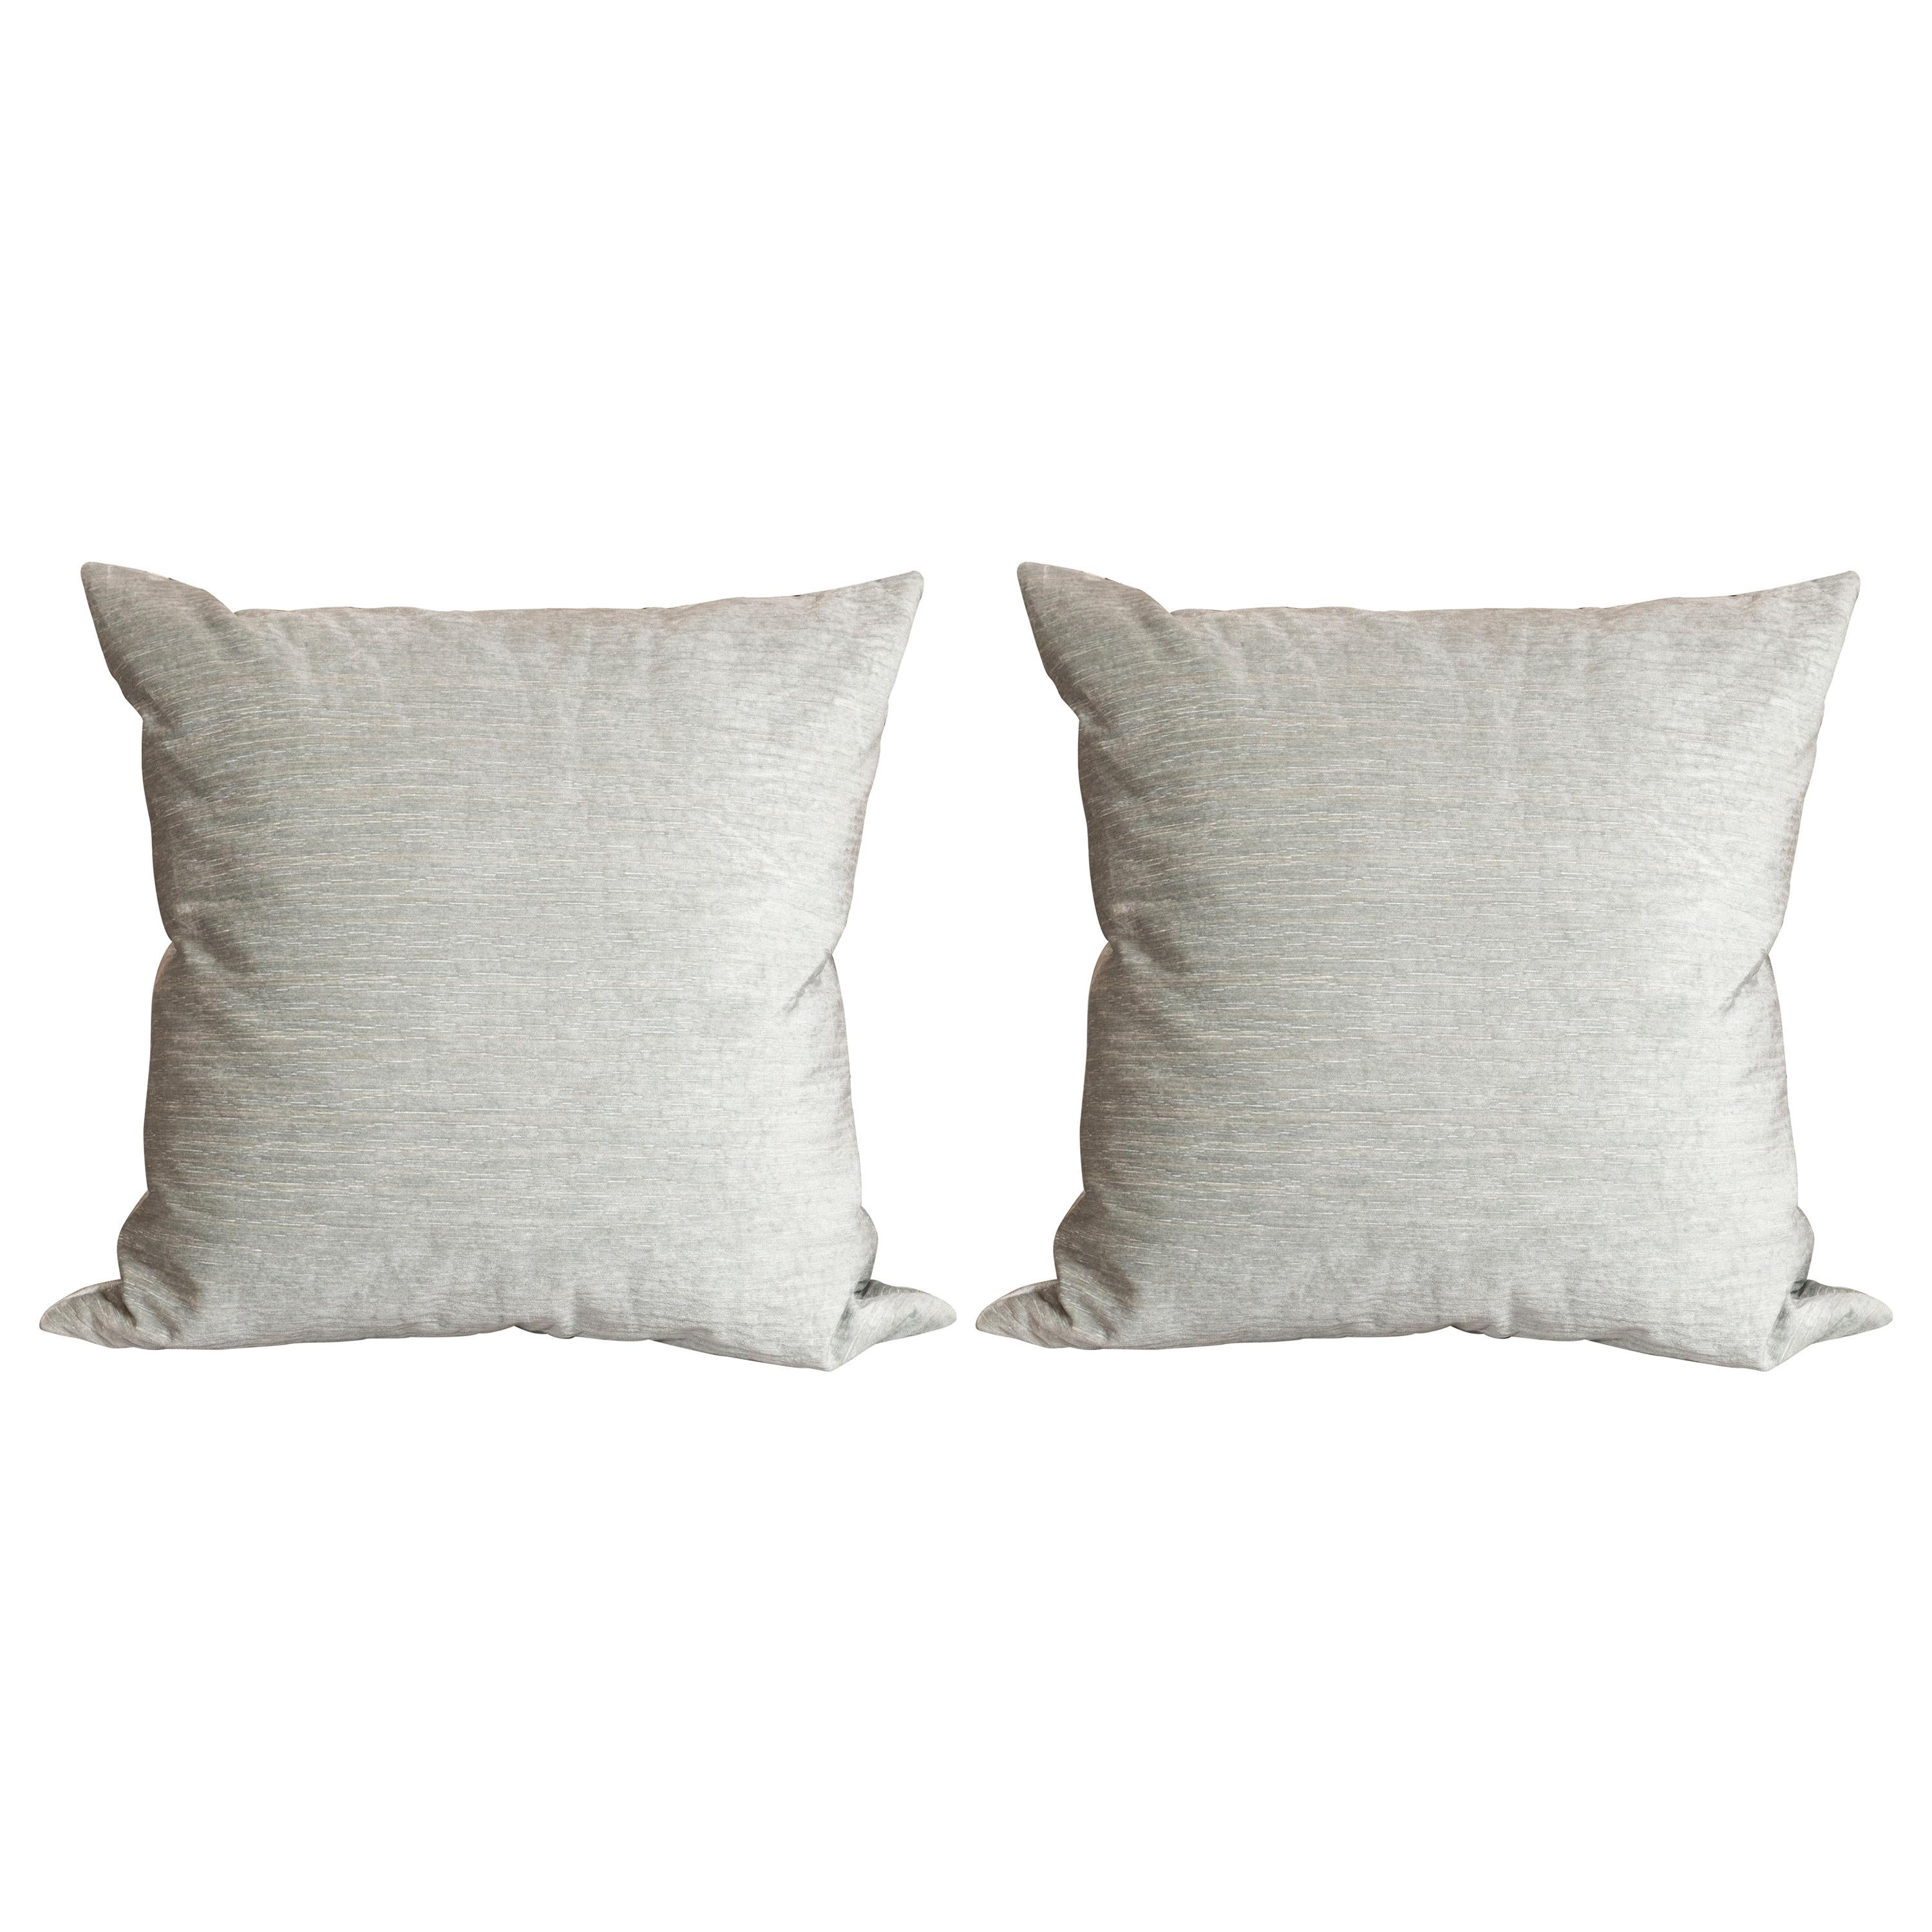 Pair of Modernist Pillows in Striated Sea Foam Velvet